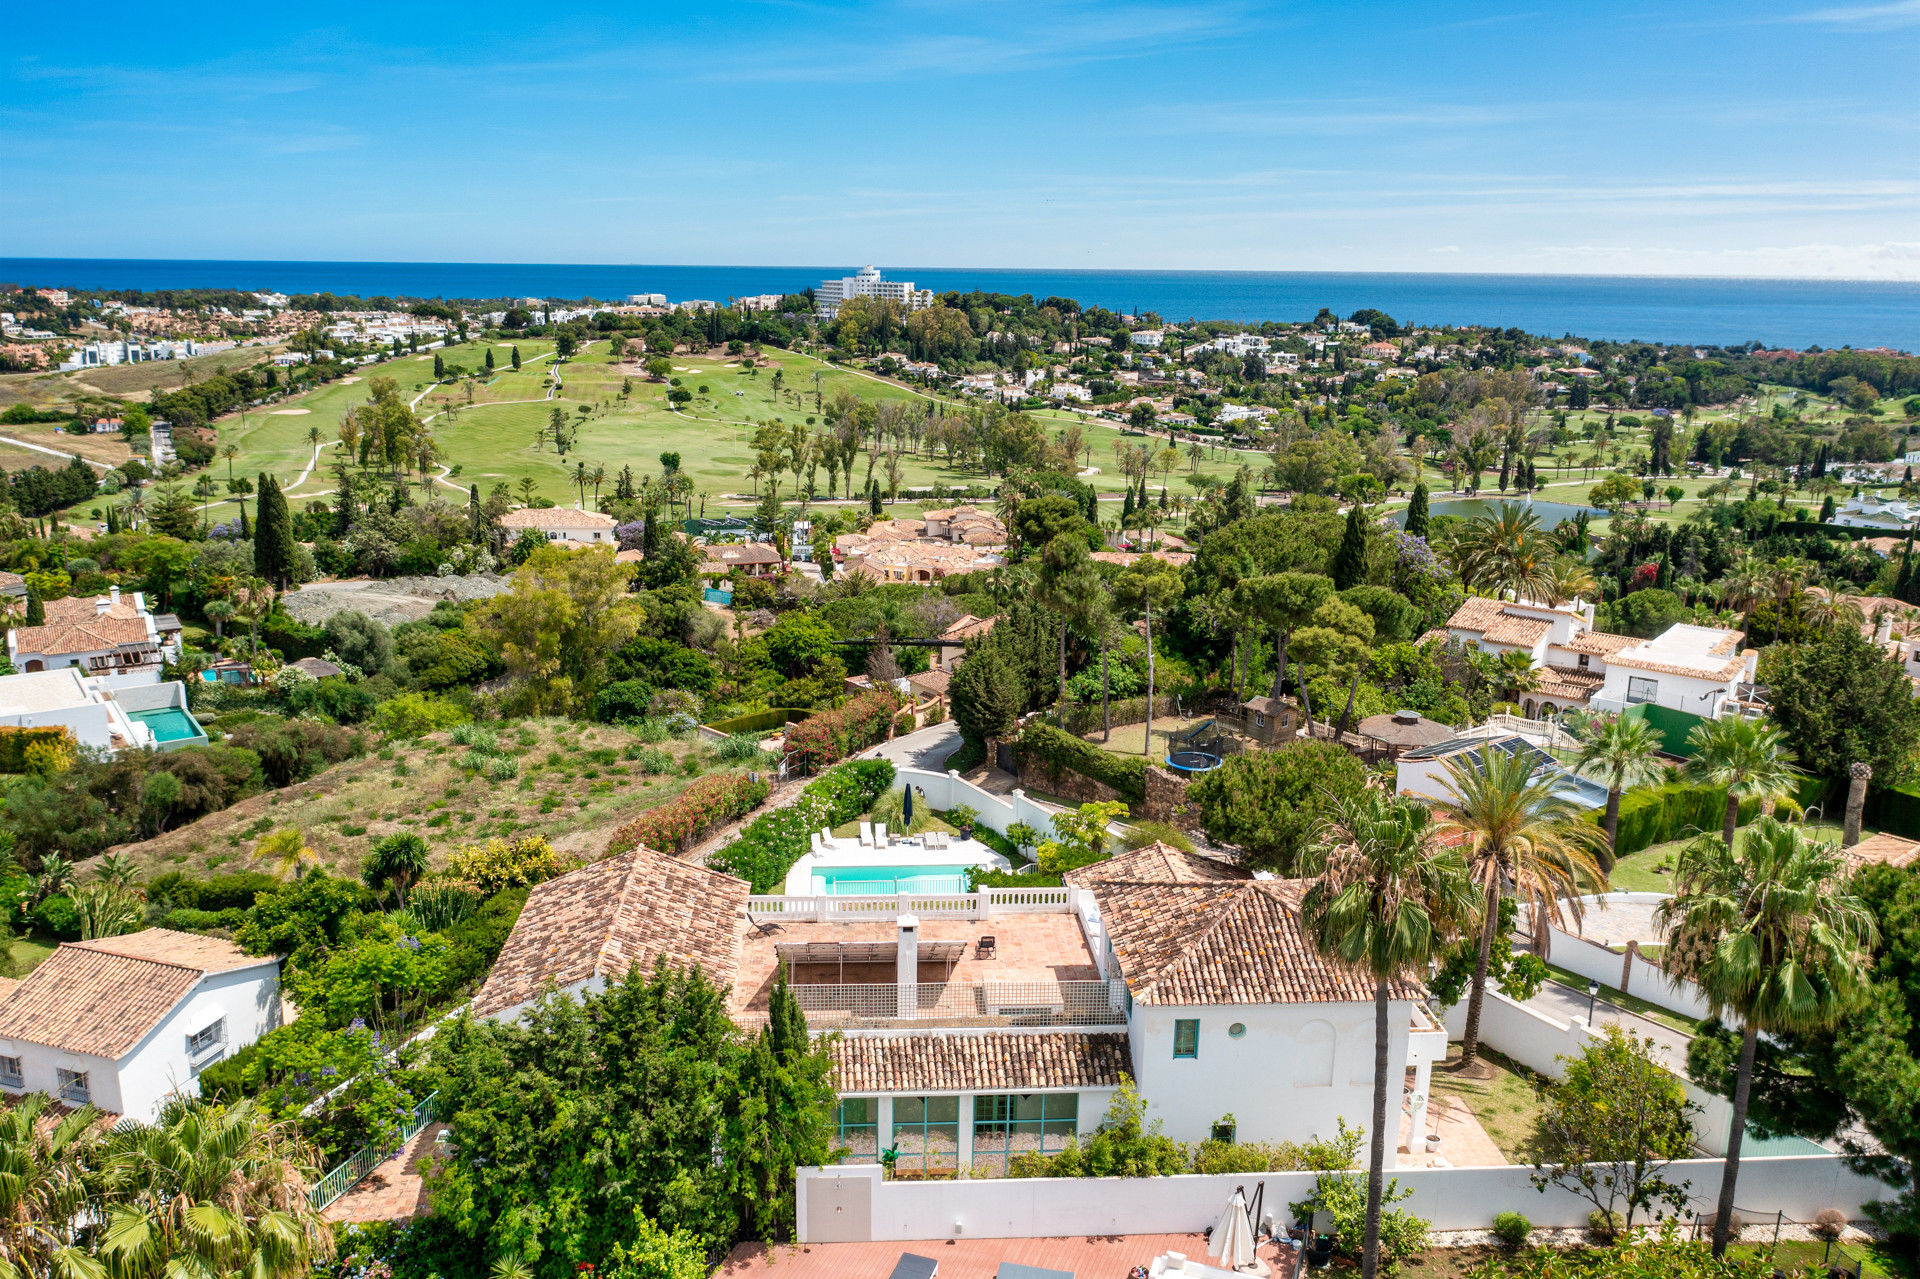 Villa excepcional con vistas al mar Mediterráneo, golf y montaña de La Concha en Paraiso Alto